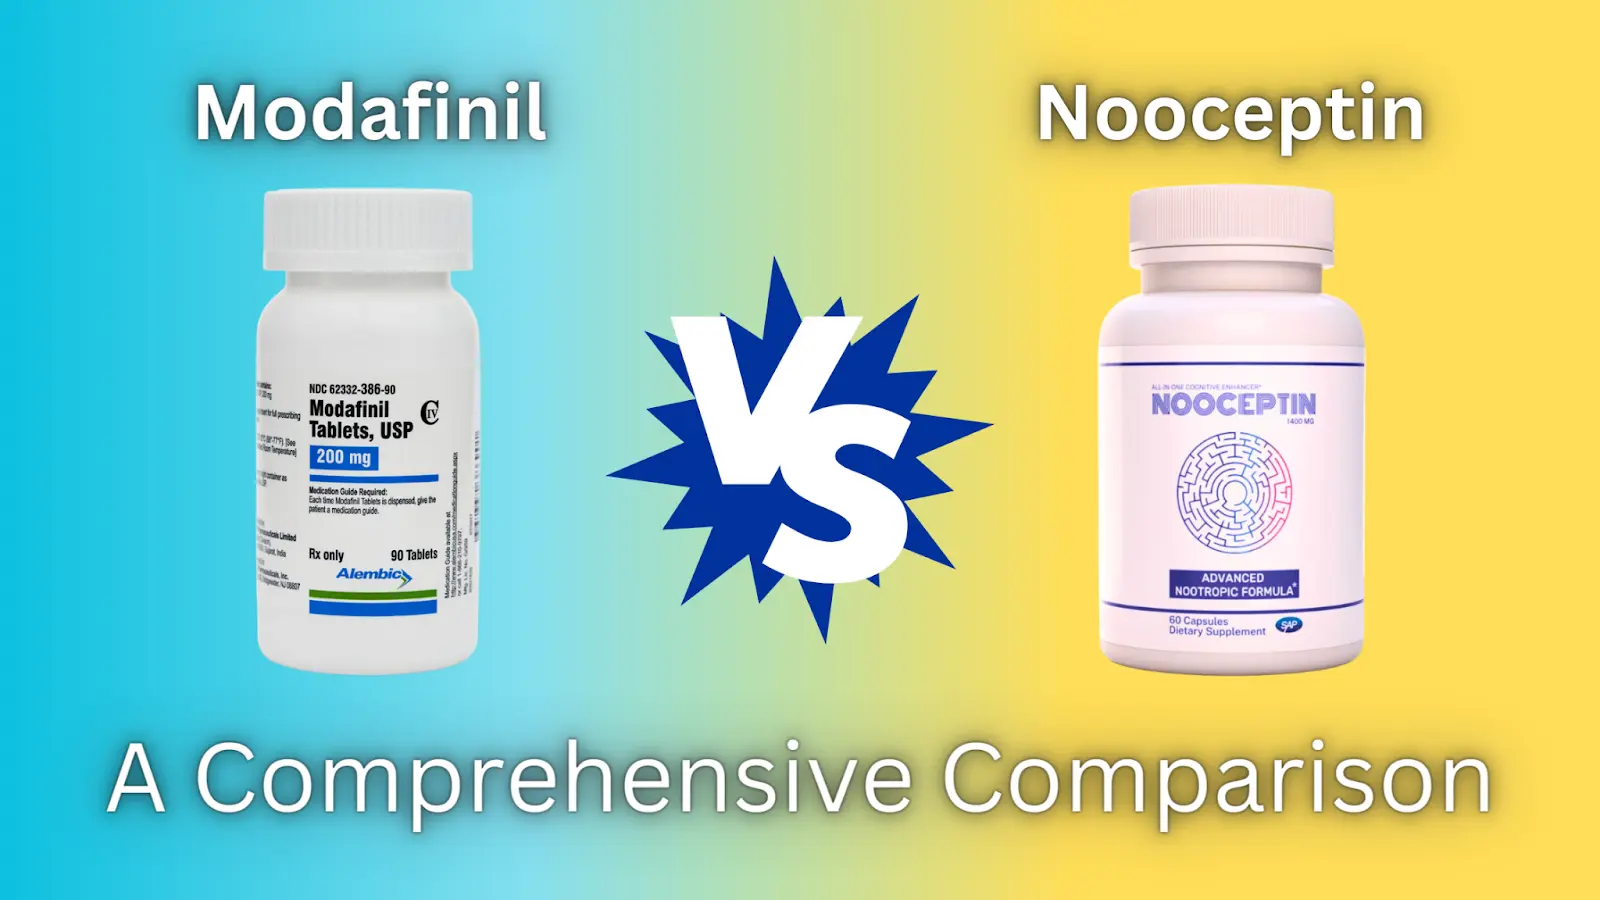 Modafinil Vs. Nooceptin: A Comprehensive Comparison